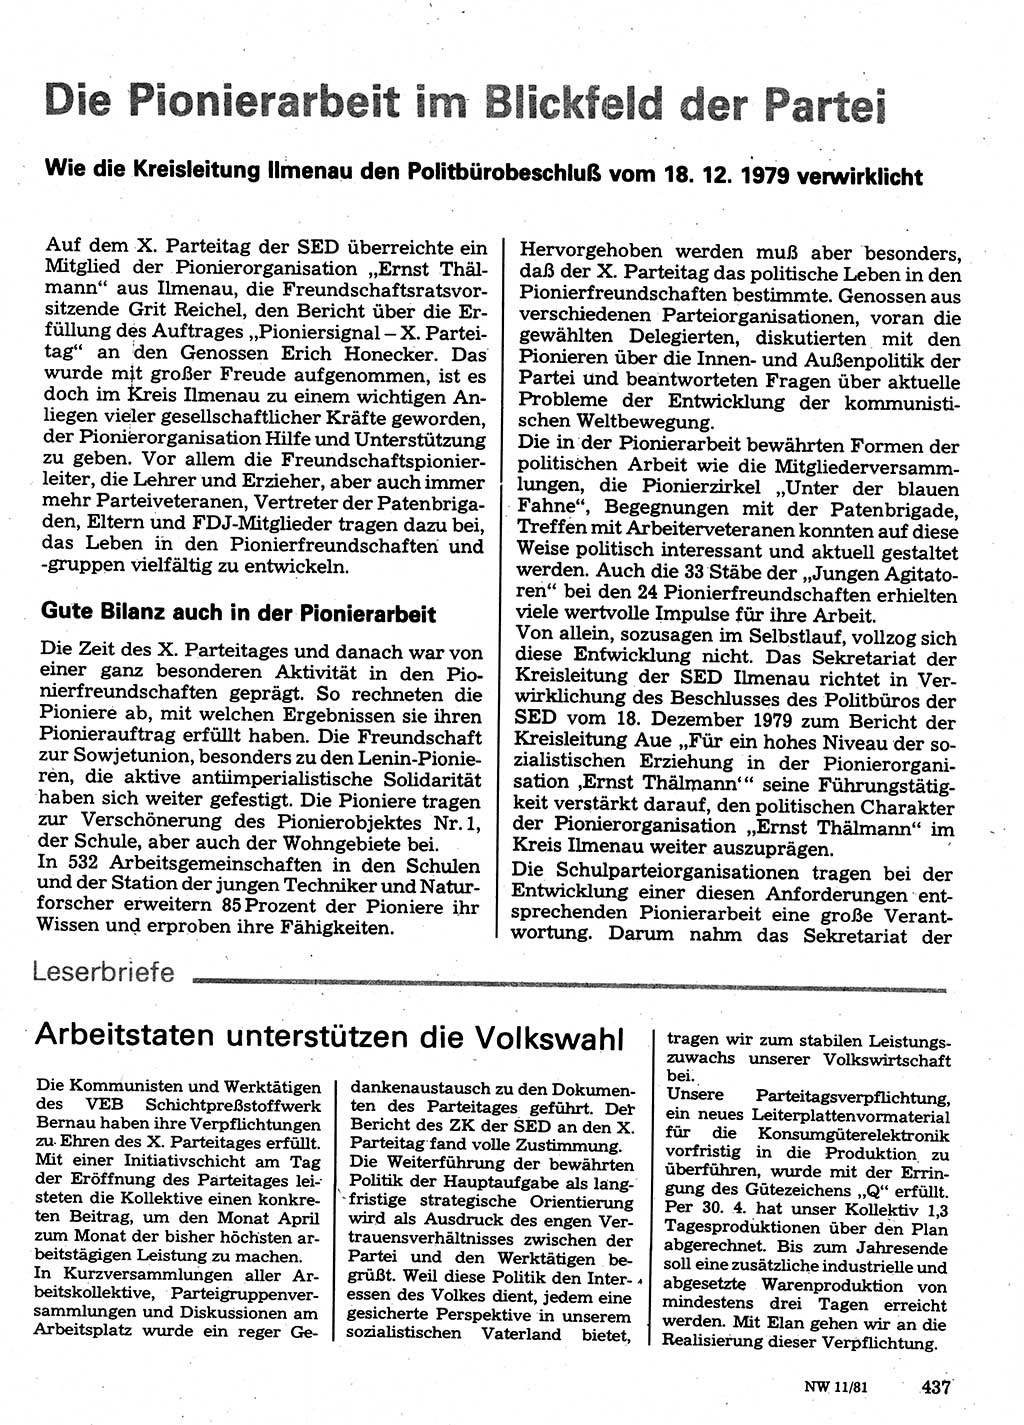 Neuer Weg (NW), Organ des Zentralkomitees (ZK) der SED (Sozialistische Einheitspartei Deutschlands) für Fragen des Parteilebens, 36. Jahrgang [Deutsche Demokratische Republik (DDR)] 1981, Seite 437 (NW ZK SED DDR 1981, S. 437)